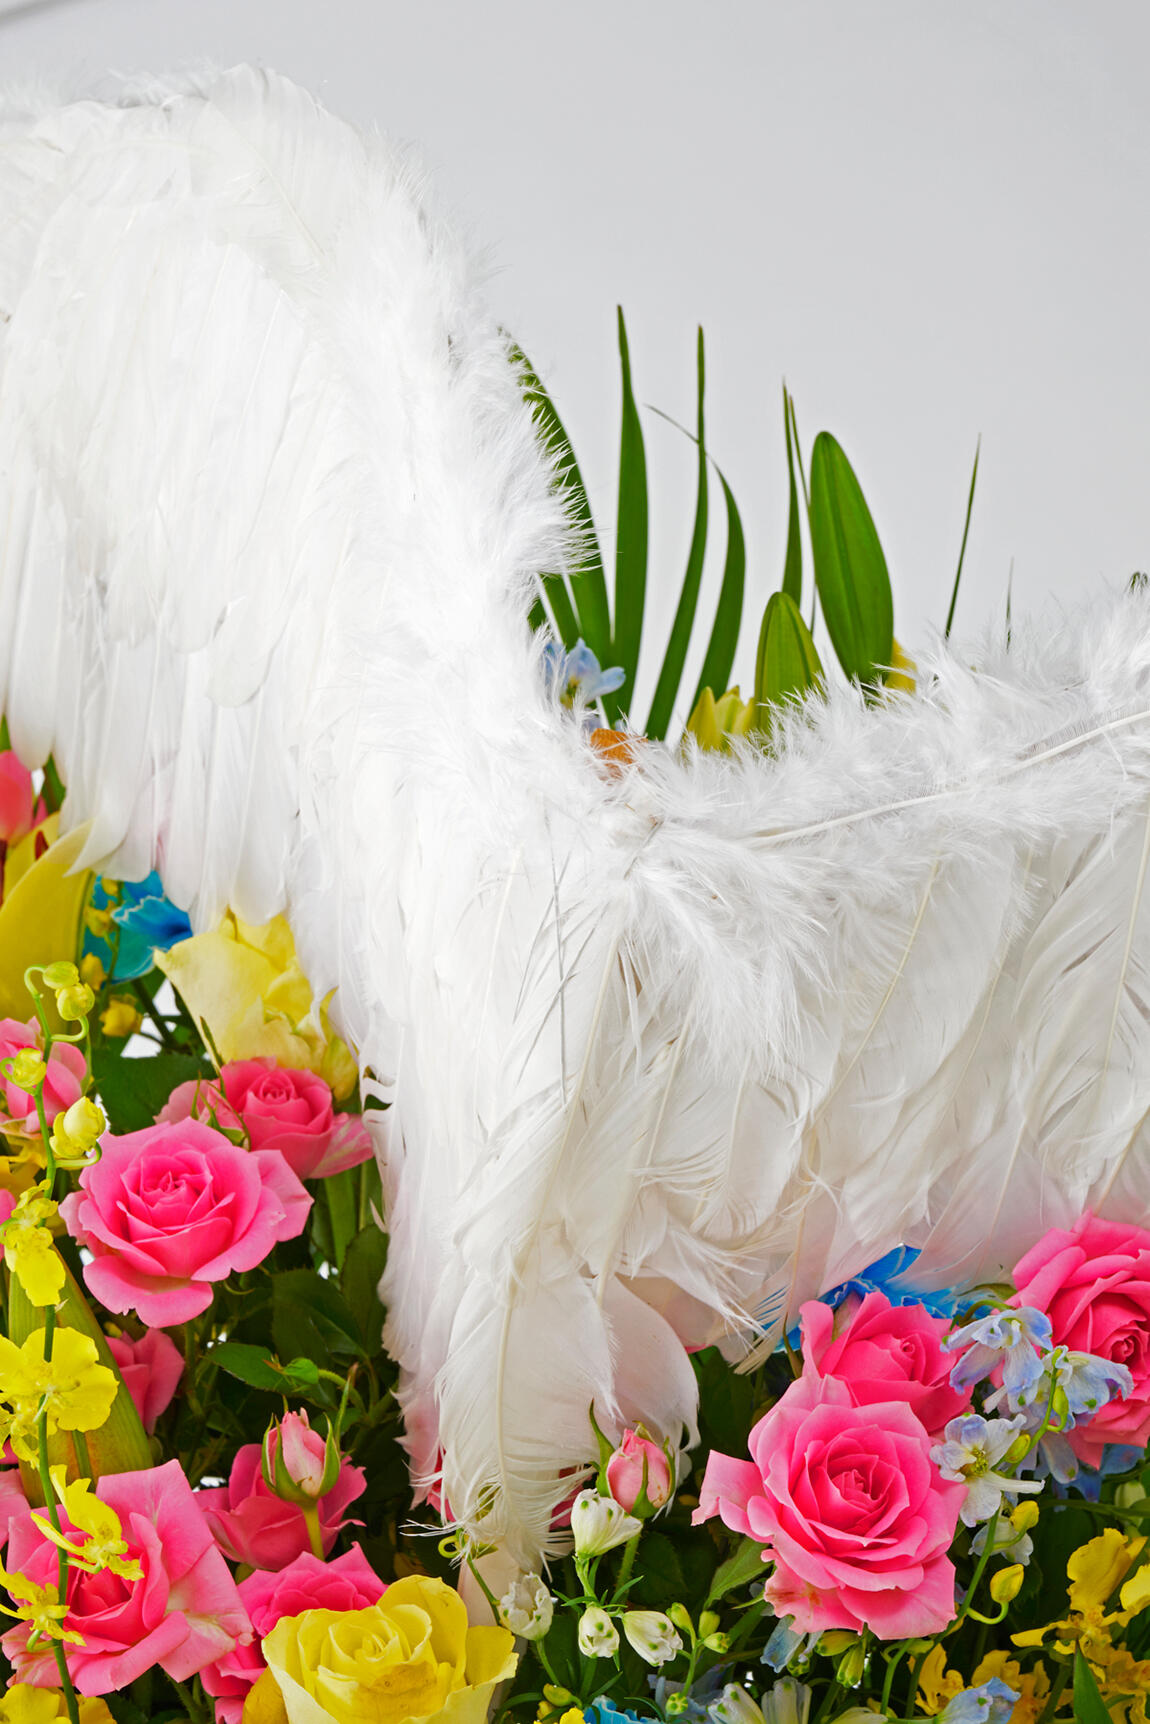 <p>天使の翼付きスタンド花はスナックやキャバクラ、バーのキャストの方へのお誕生日プレゼントや開店祝い、移転祝い、周年祝いとしてのお花の贈り物に人気です。</p>